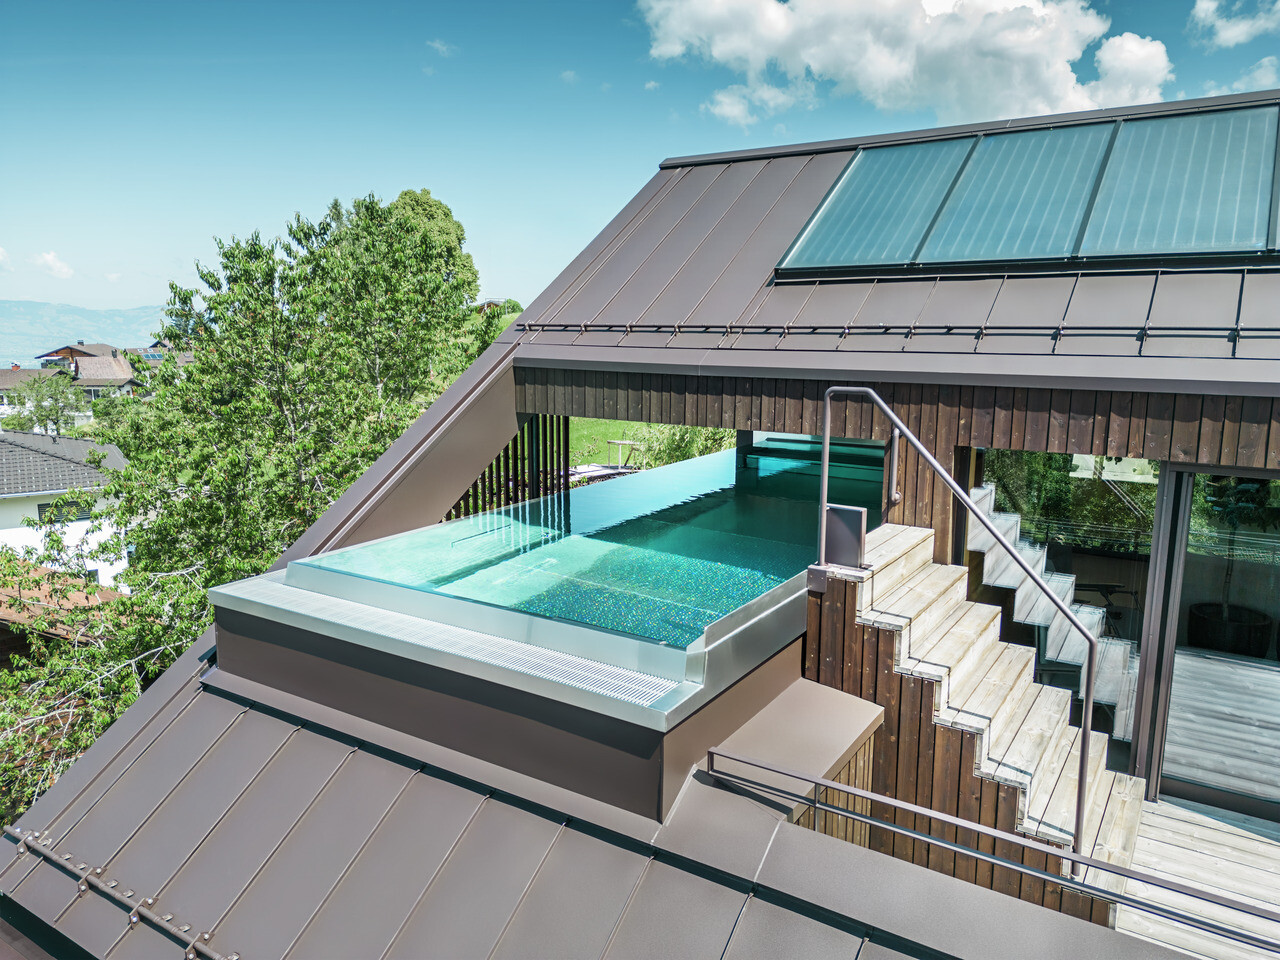 Vue aérienne d'une maison moderne avec un toit en Prefalz PREFA brun noisette. Un toit-terrasse avec piscine offre un espace de détente exclusif avec vue sur le paysage vallonné et verdoyant.